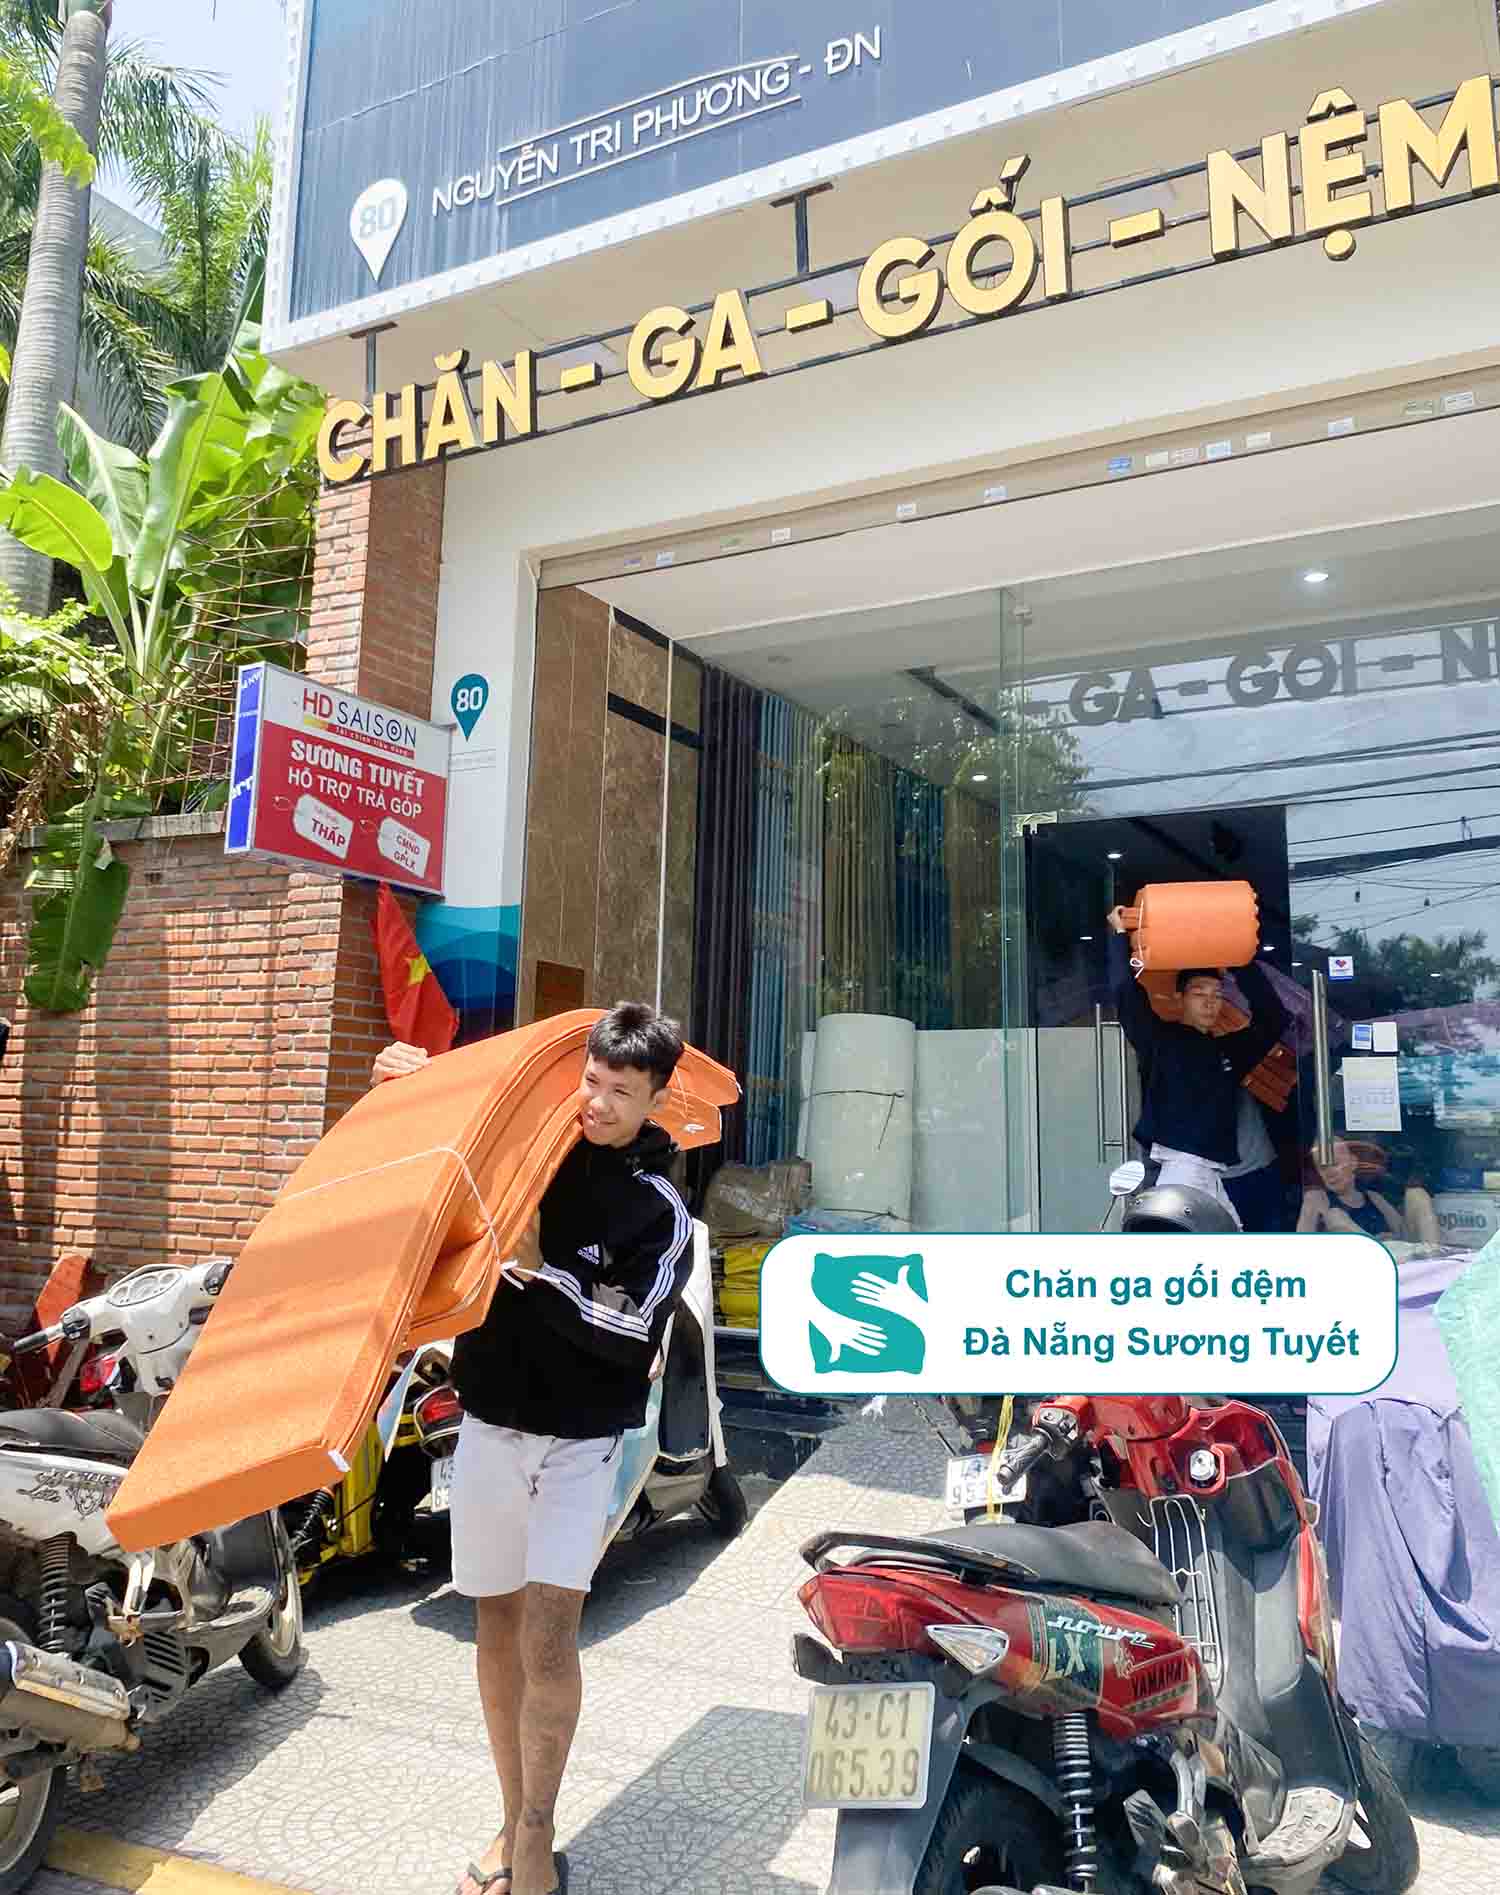 Cửa hàng chăn ga gối nệm, đệm ghế, rèm cửa Sương Tuyết tọa lạc tại 80 Nguyễn Tri Phương, quận Thanh Khê.